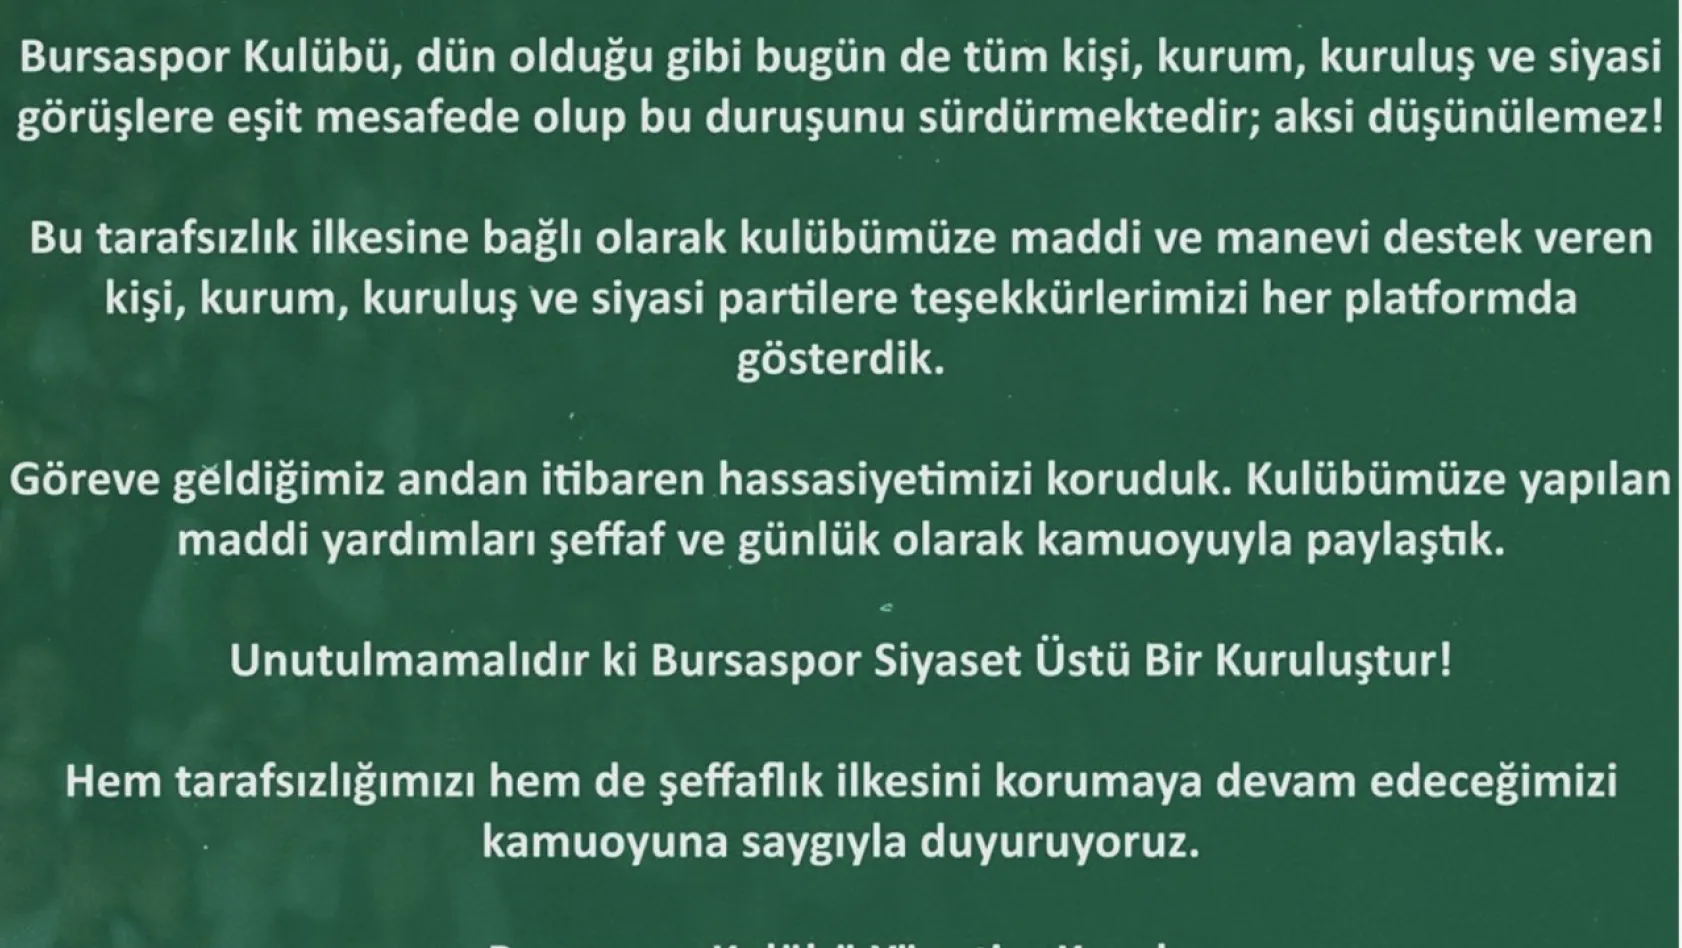 Bursaspor Kulübü: 'Bursaspor siyaset üstü bir kuruluştur'